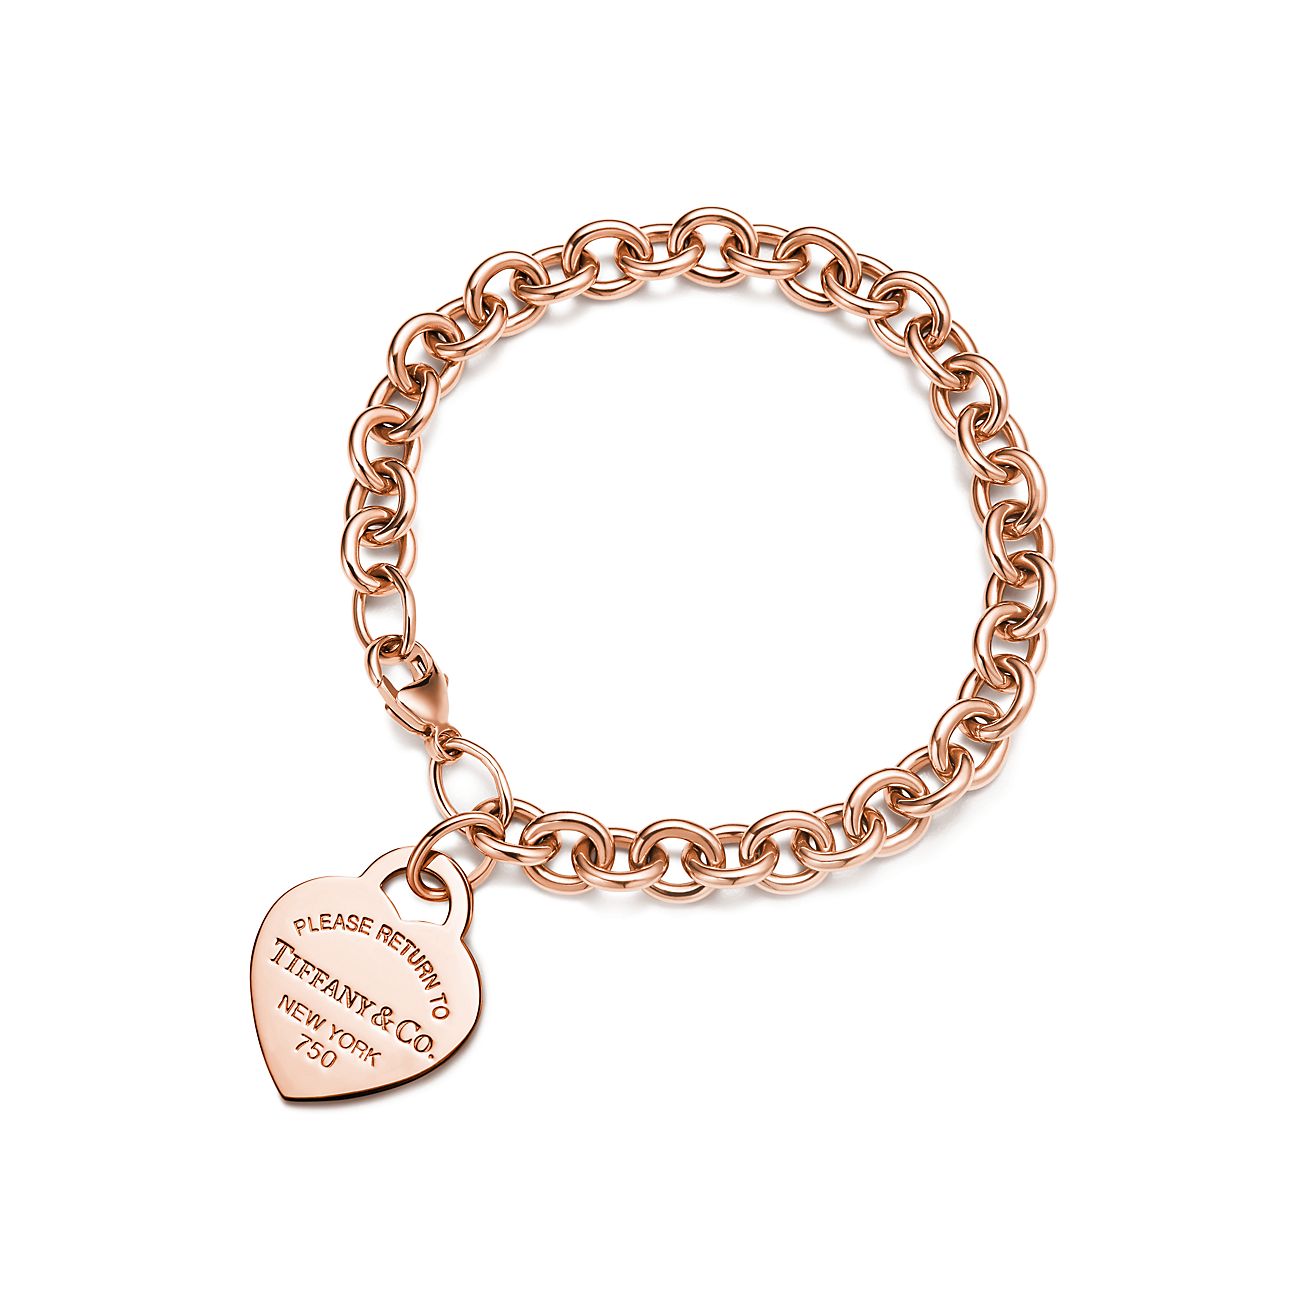 Lovelock 18ct Gold Charm Bracelet